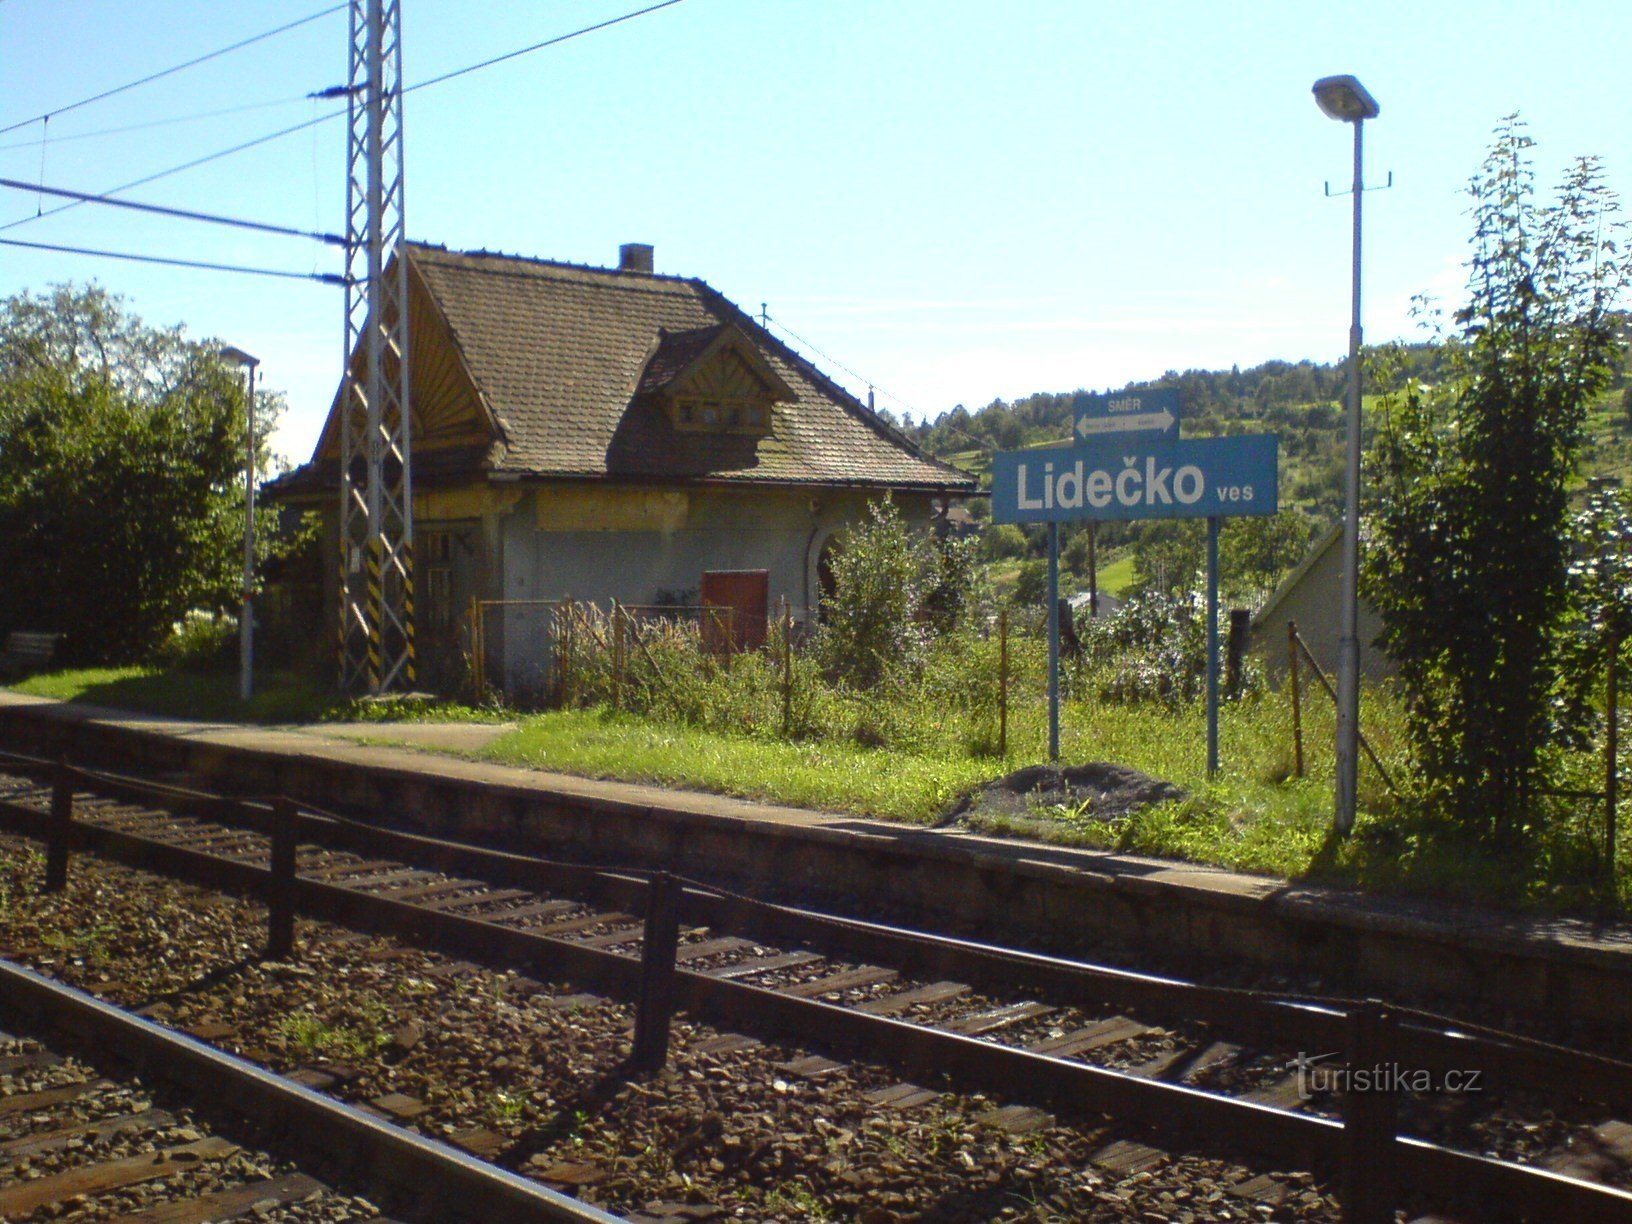 Village de Lidečko - gare